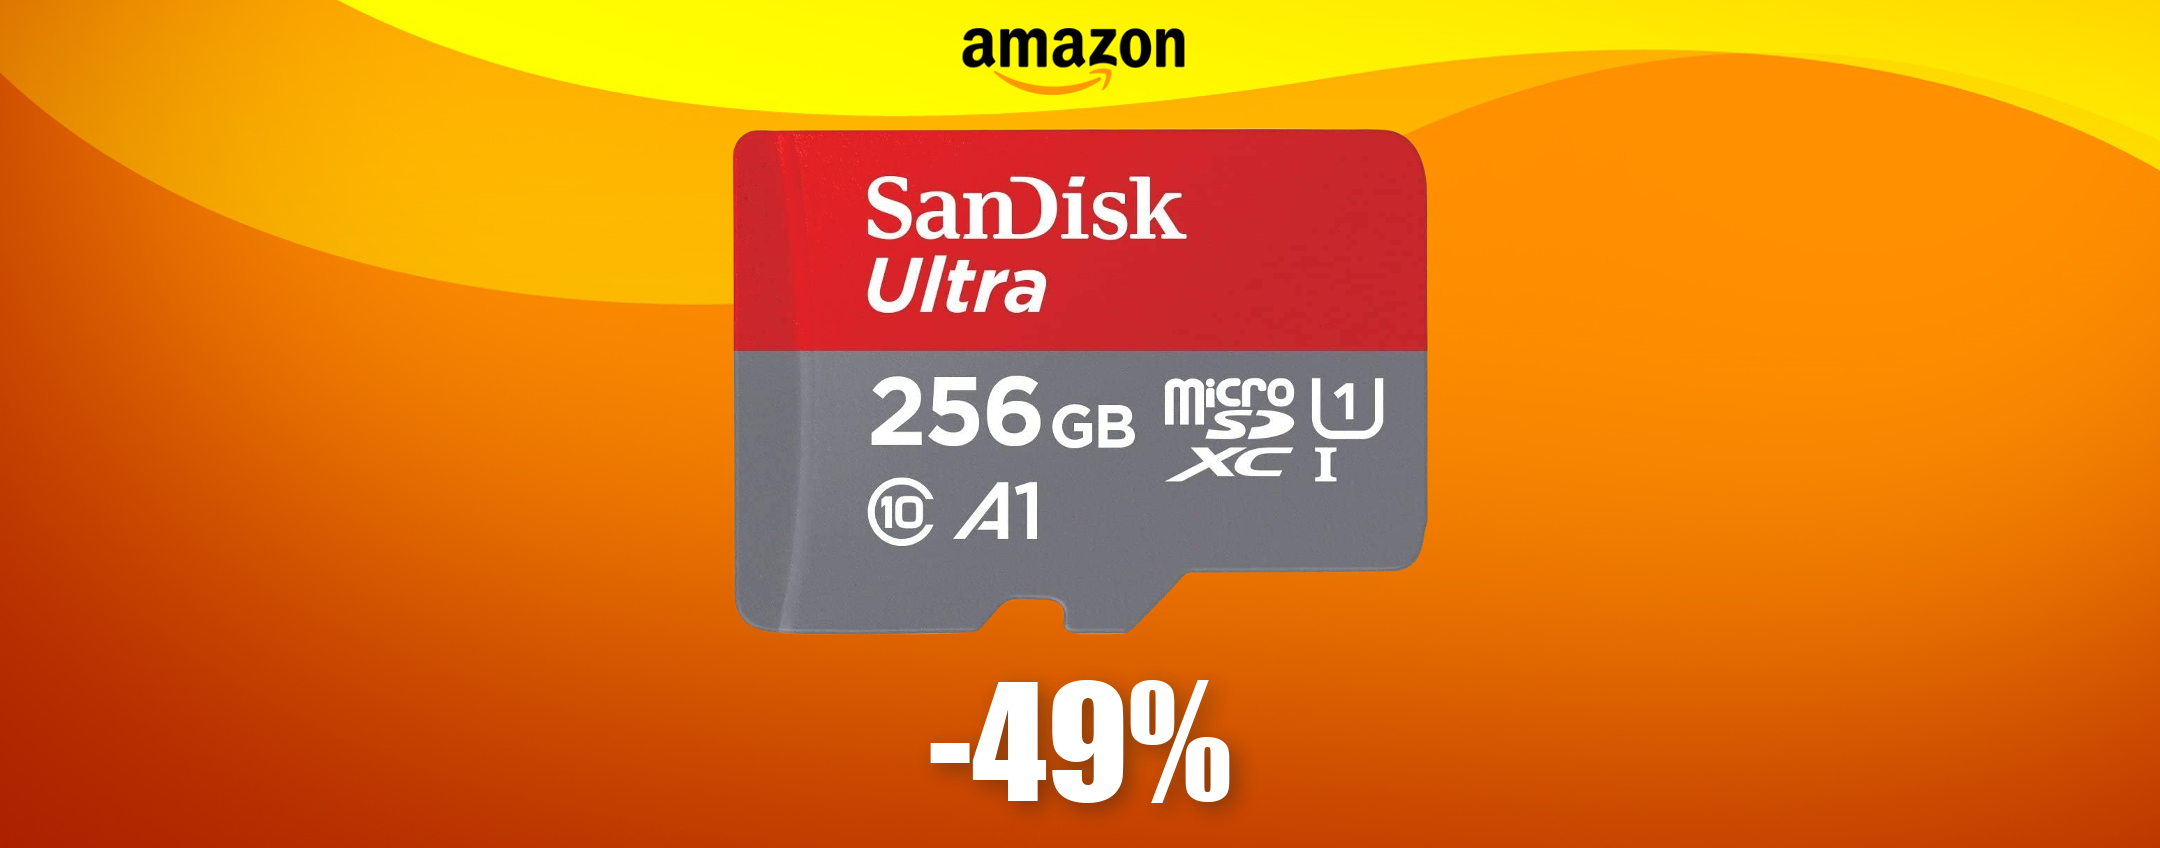 MicroSD SanDisk 256GB praticamente a METÀ PREZZO: bastano 31€